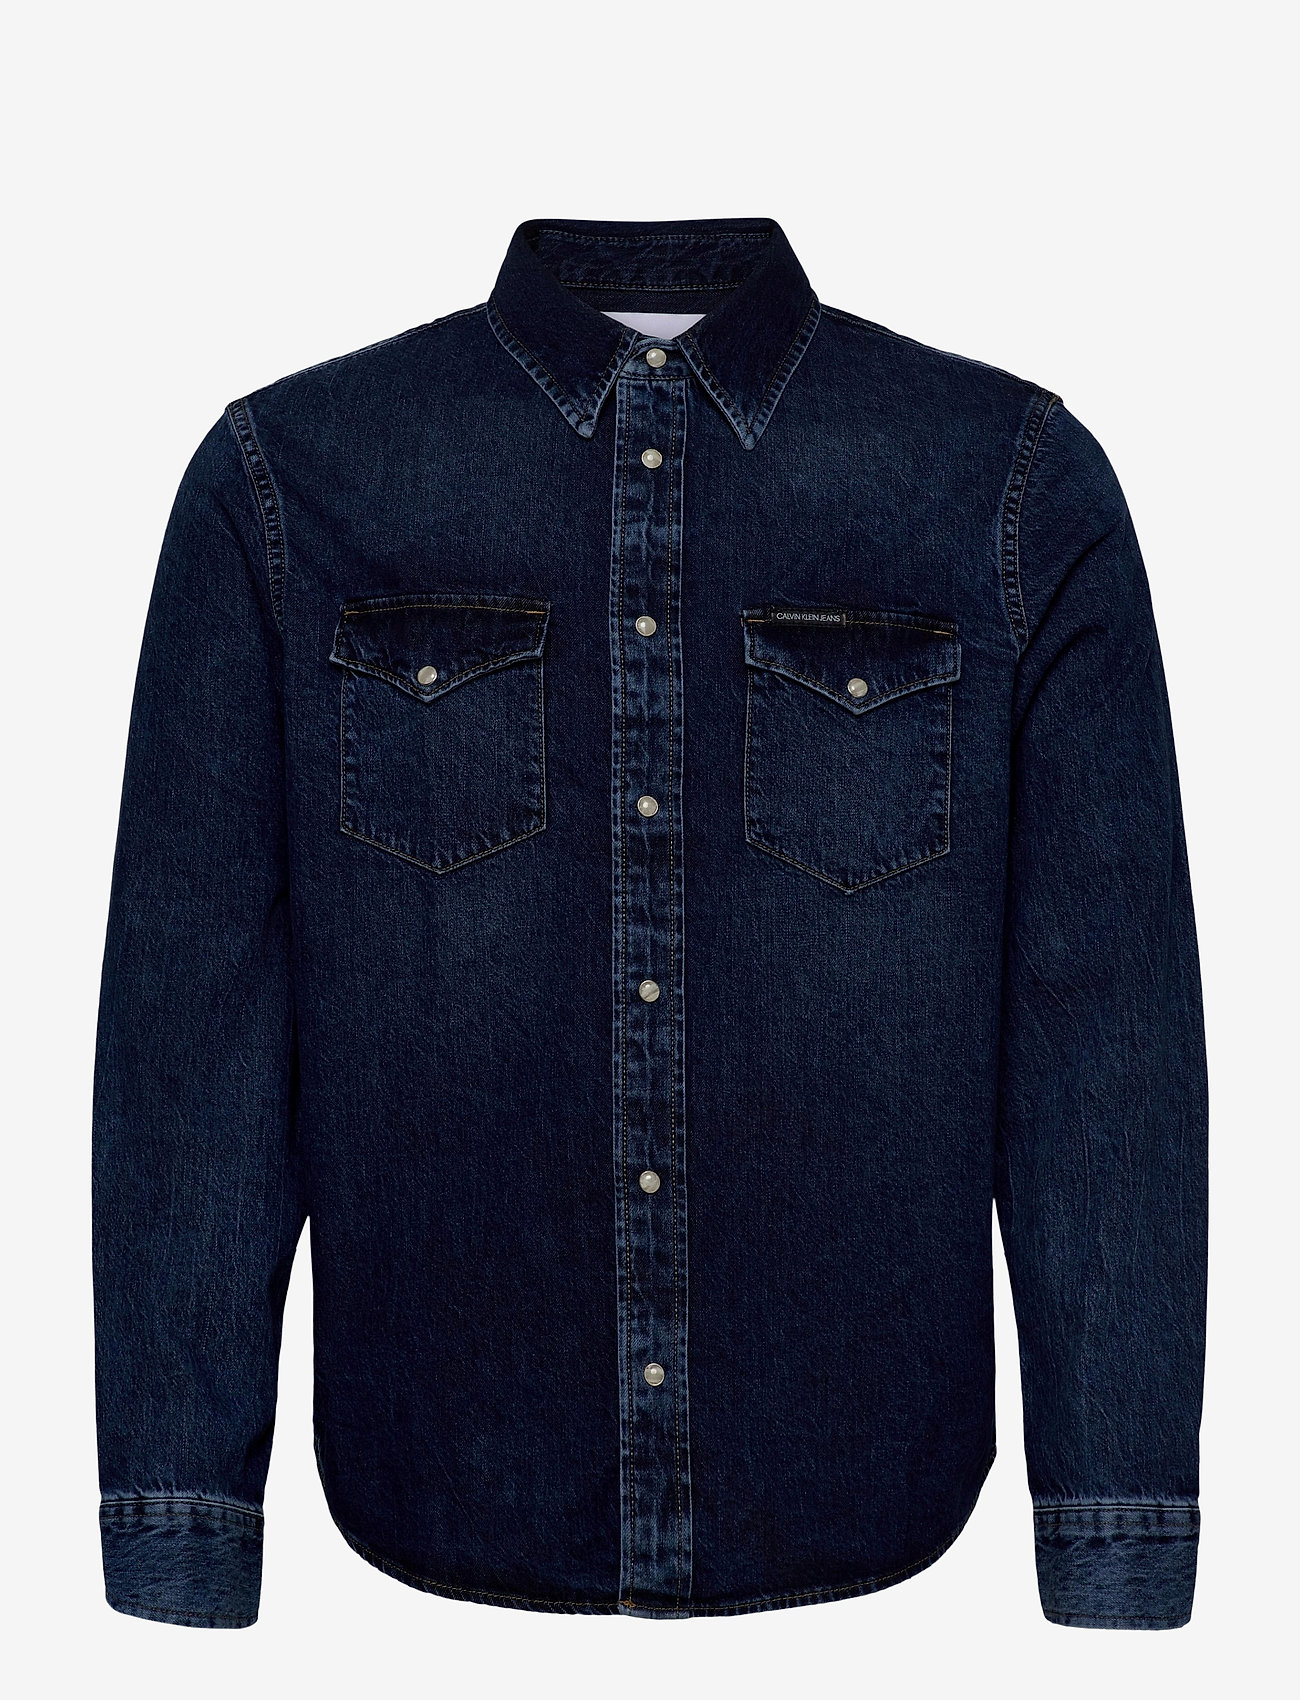 Modern Western Shirt (Ab092 Mid Blue 